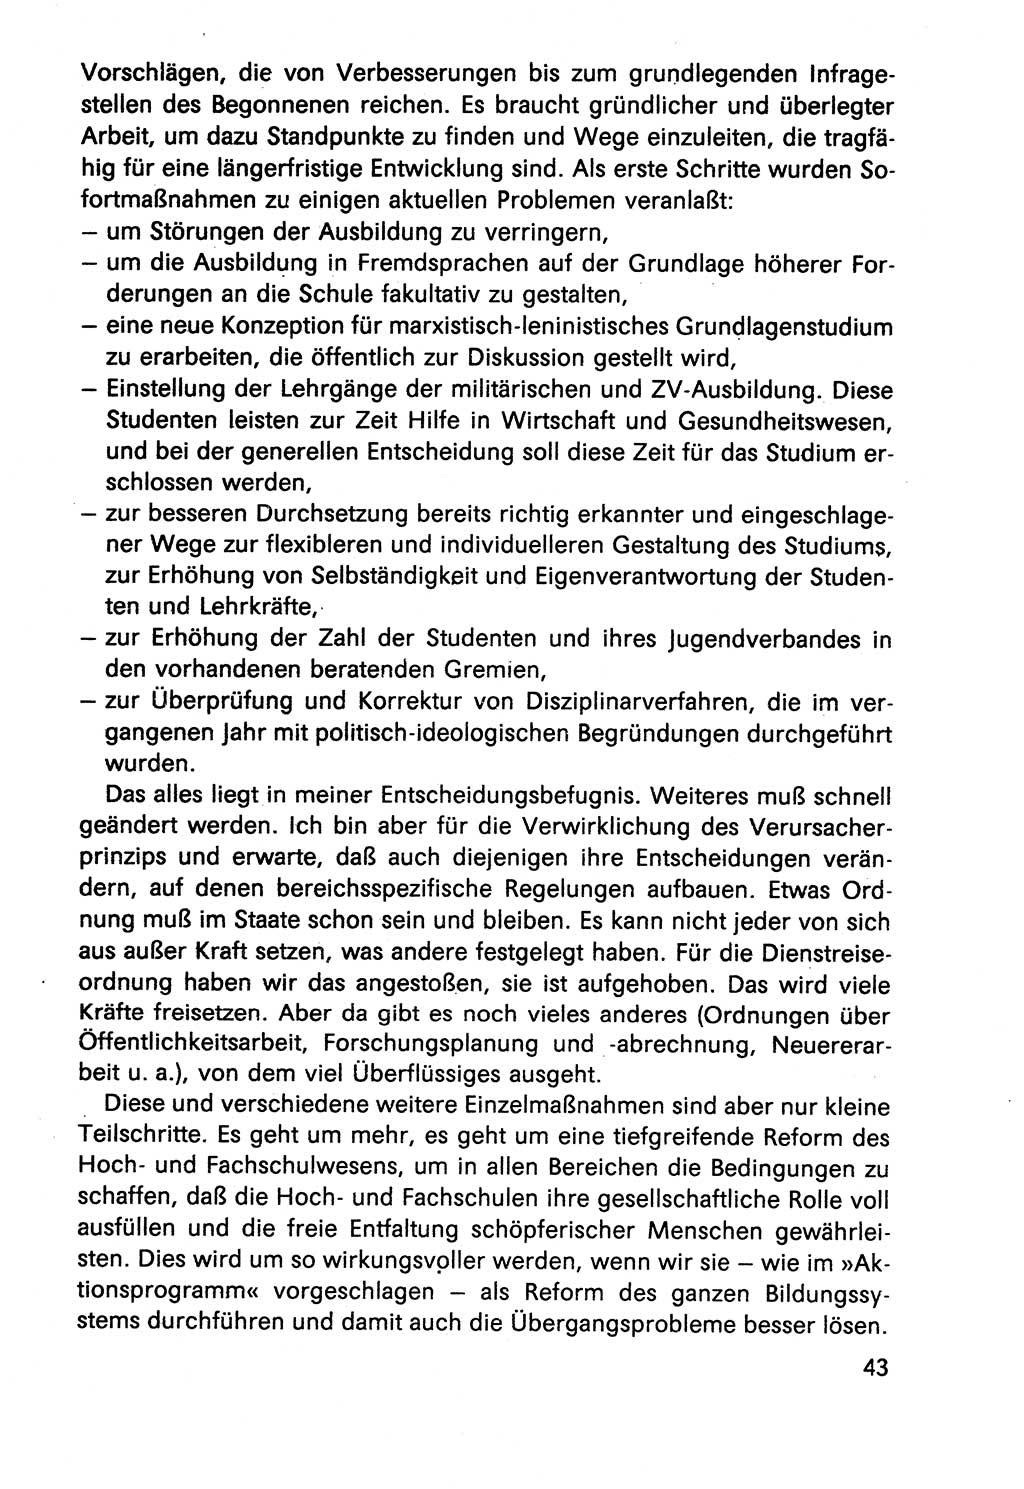 Diskussionsbeiträge, 10. Tagung des ZK (Zentralkomitee) der SED (Sozialistische Einheitspartei Deutschlands) [Deutsche Demokratische Republik (DDR)] 1989, Seite 43 (Disk.-Beitr. 10. Tg. ZK SED DDR 1989, S. 43)